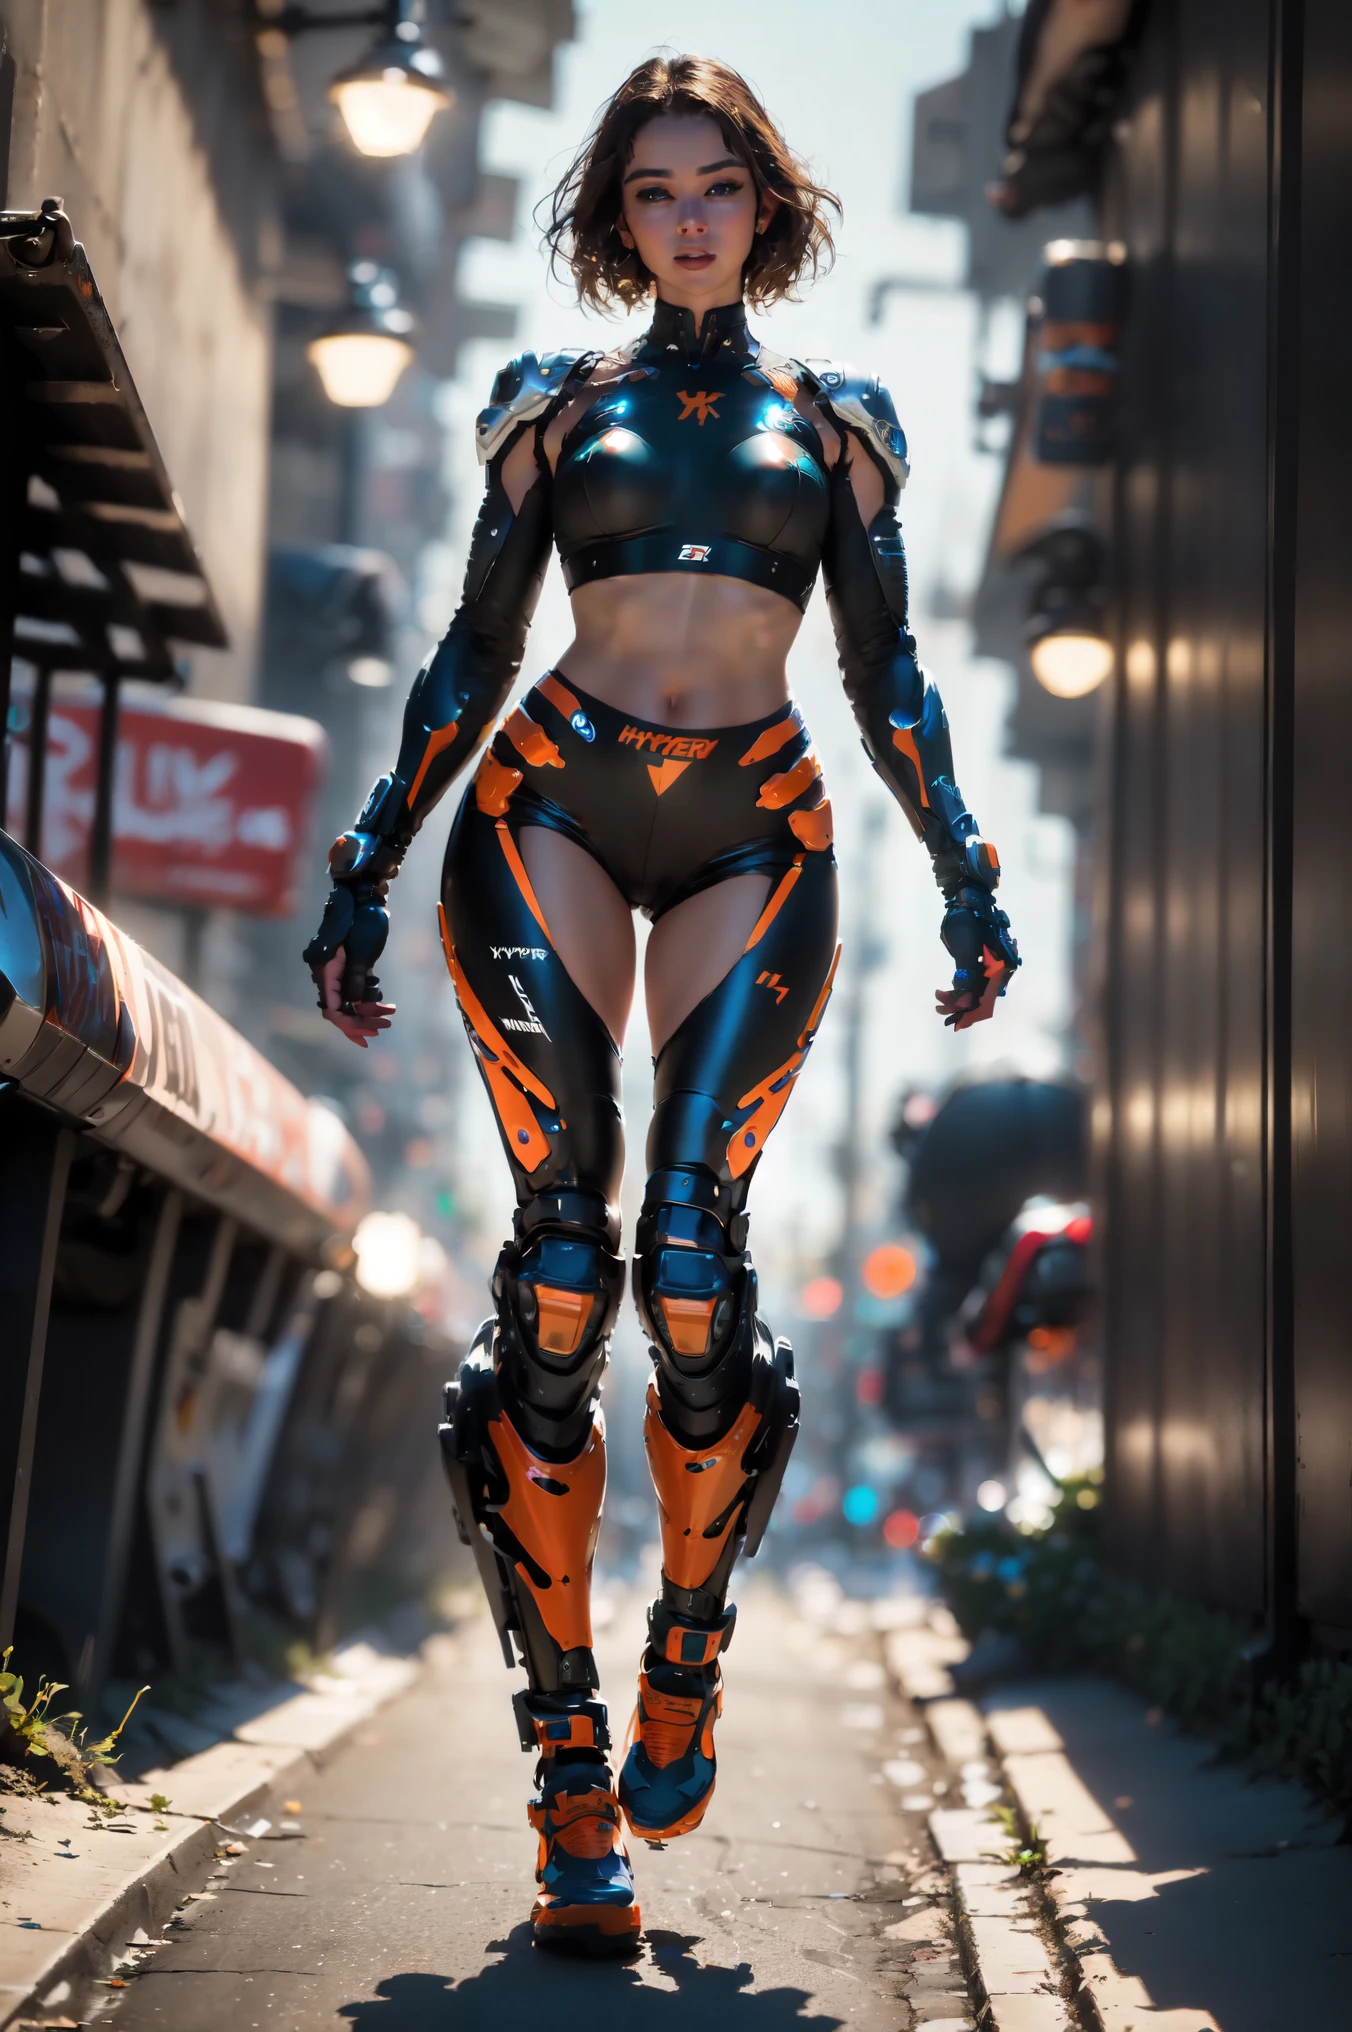 街道, 摩托车, 全身照, 码头场景, a beautiful young cyborg woman riding a KTM 450 motocross 摩托车, 迷人的造型, 齐肩, 美丽 闪亮 光滑, 浅棕色的头发, (最好的质量, 4k, 8千, 高分辨率, 杰作:1.2), 荒诞, 杰作, 极其详细, (实际的, photo实际的, photo实际的:1.37), 复杂部分s, 人类发展报告, (复杂部分s:1.12), (超详细, hyper 实际的, 柔和的灯光, 辛辣的:1.2), 美丽的身影, 宏伟的解剖学, (复杂部分, 超详细:1.15), 光滑的皮肤,